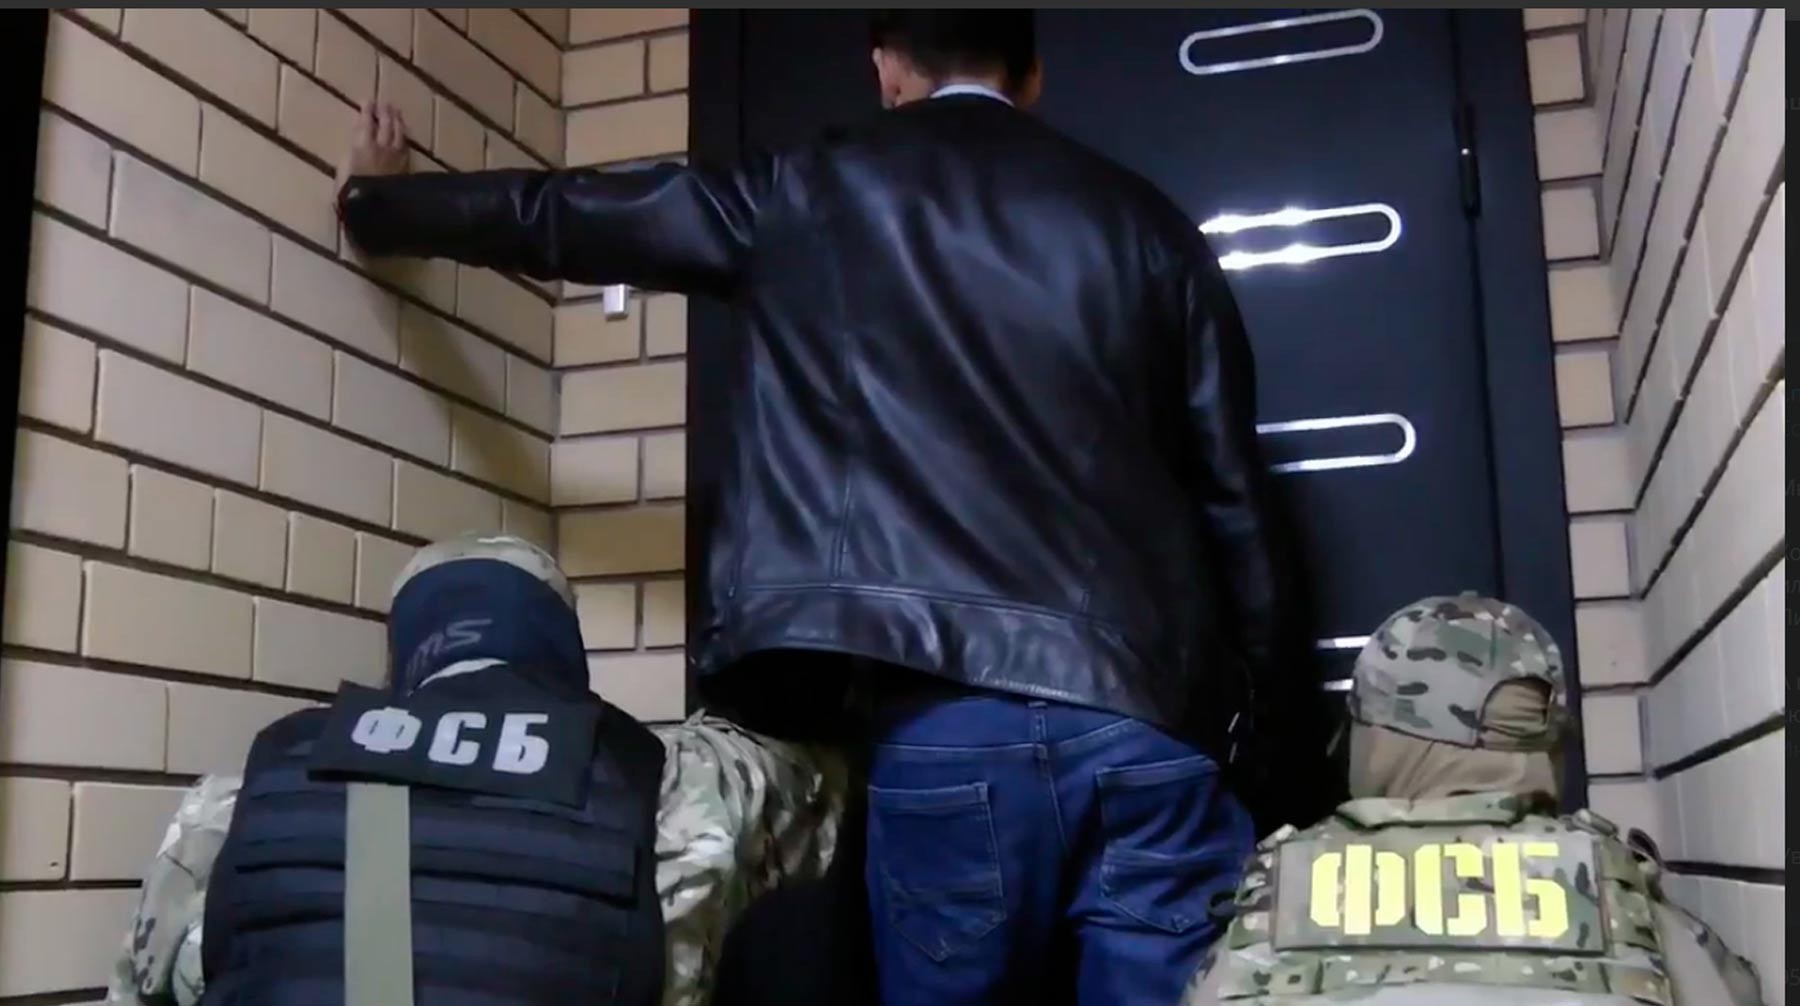 Dailystorm - ФСБ задержала финансиста ИГ за вербовку россиян в Сирию — видео